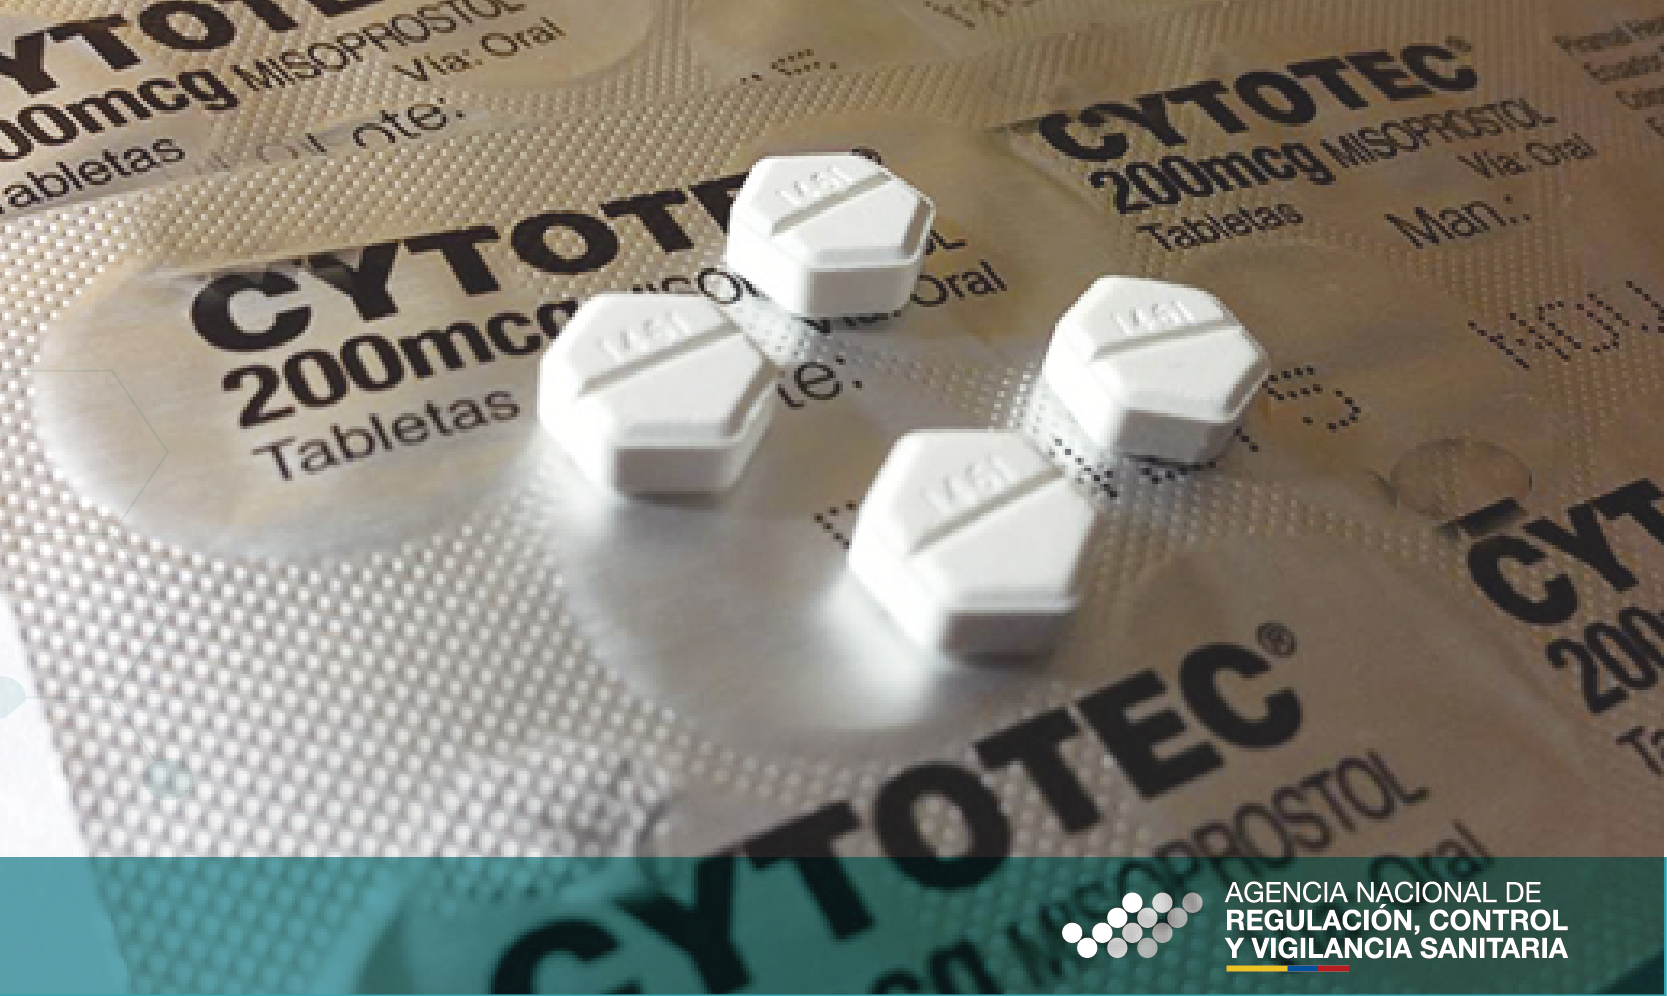 Agencia Nacional de Regulación, Control y Vigilancia Sanitaria » Se ha  detectado venta de medicamento CYTOTEC para fines abortivos y sin receta  médica